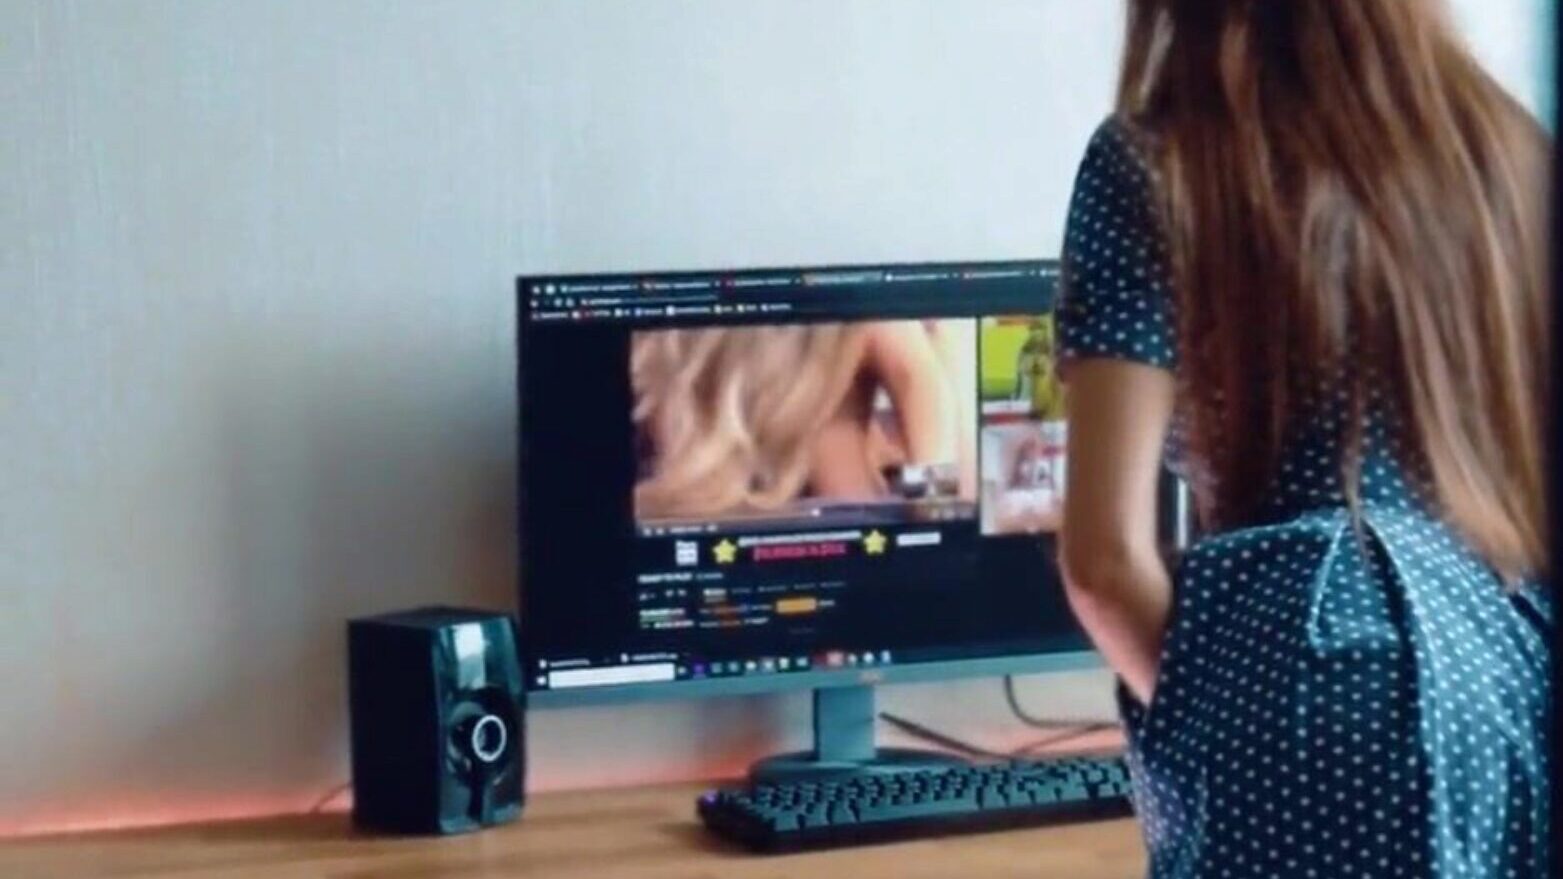 colegial pega assistindo filme pornô fica cara cara menina estudante pega vendo filme pornô cara cara